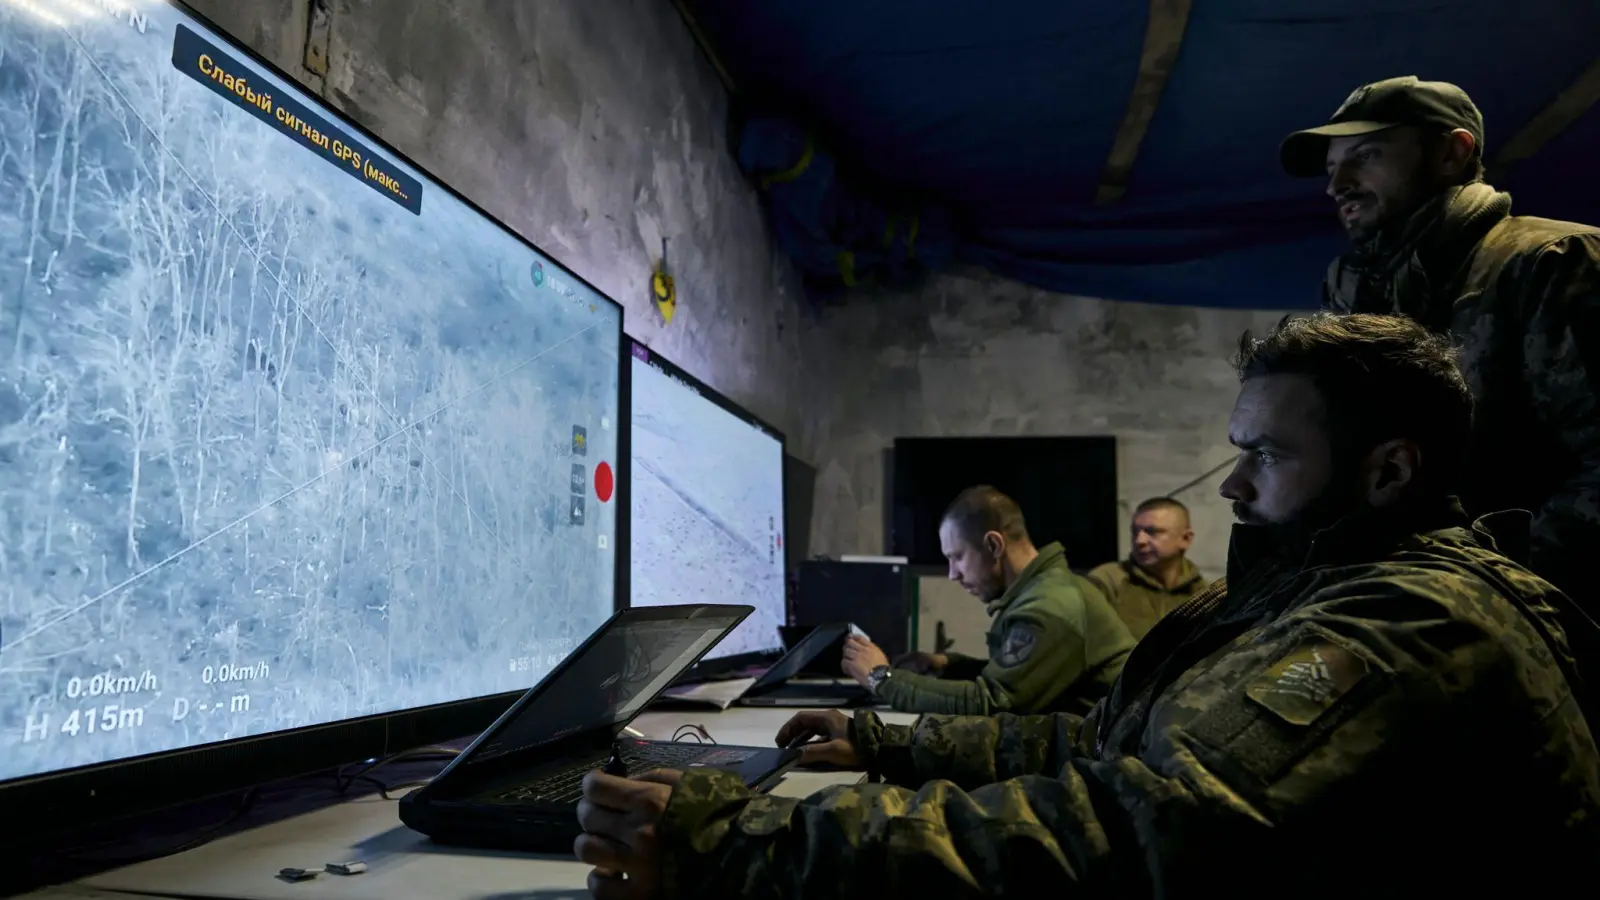 Ukrainische Soldaten verfolgen auf Monitoren die Übertragung von Drohnen in einer unterirdischen Kommandozentrale. (Foto: Libkos/AP/dpa/Symbolbild)